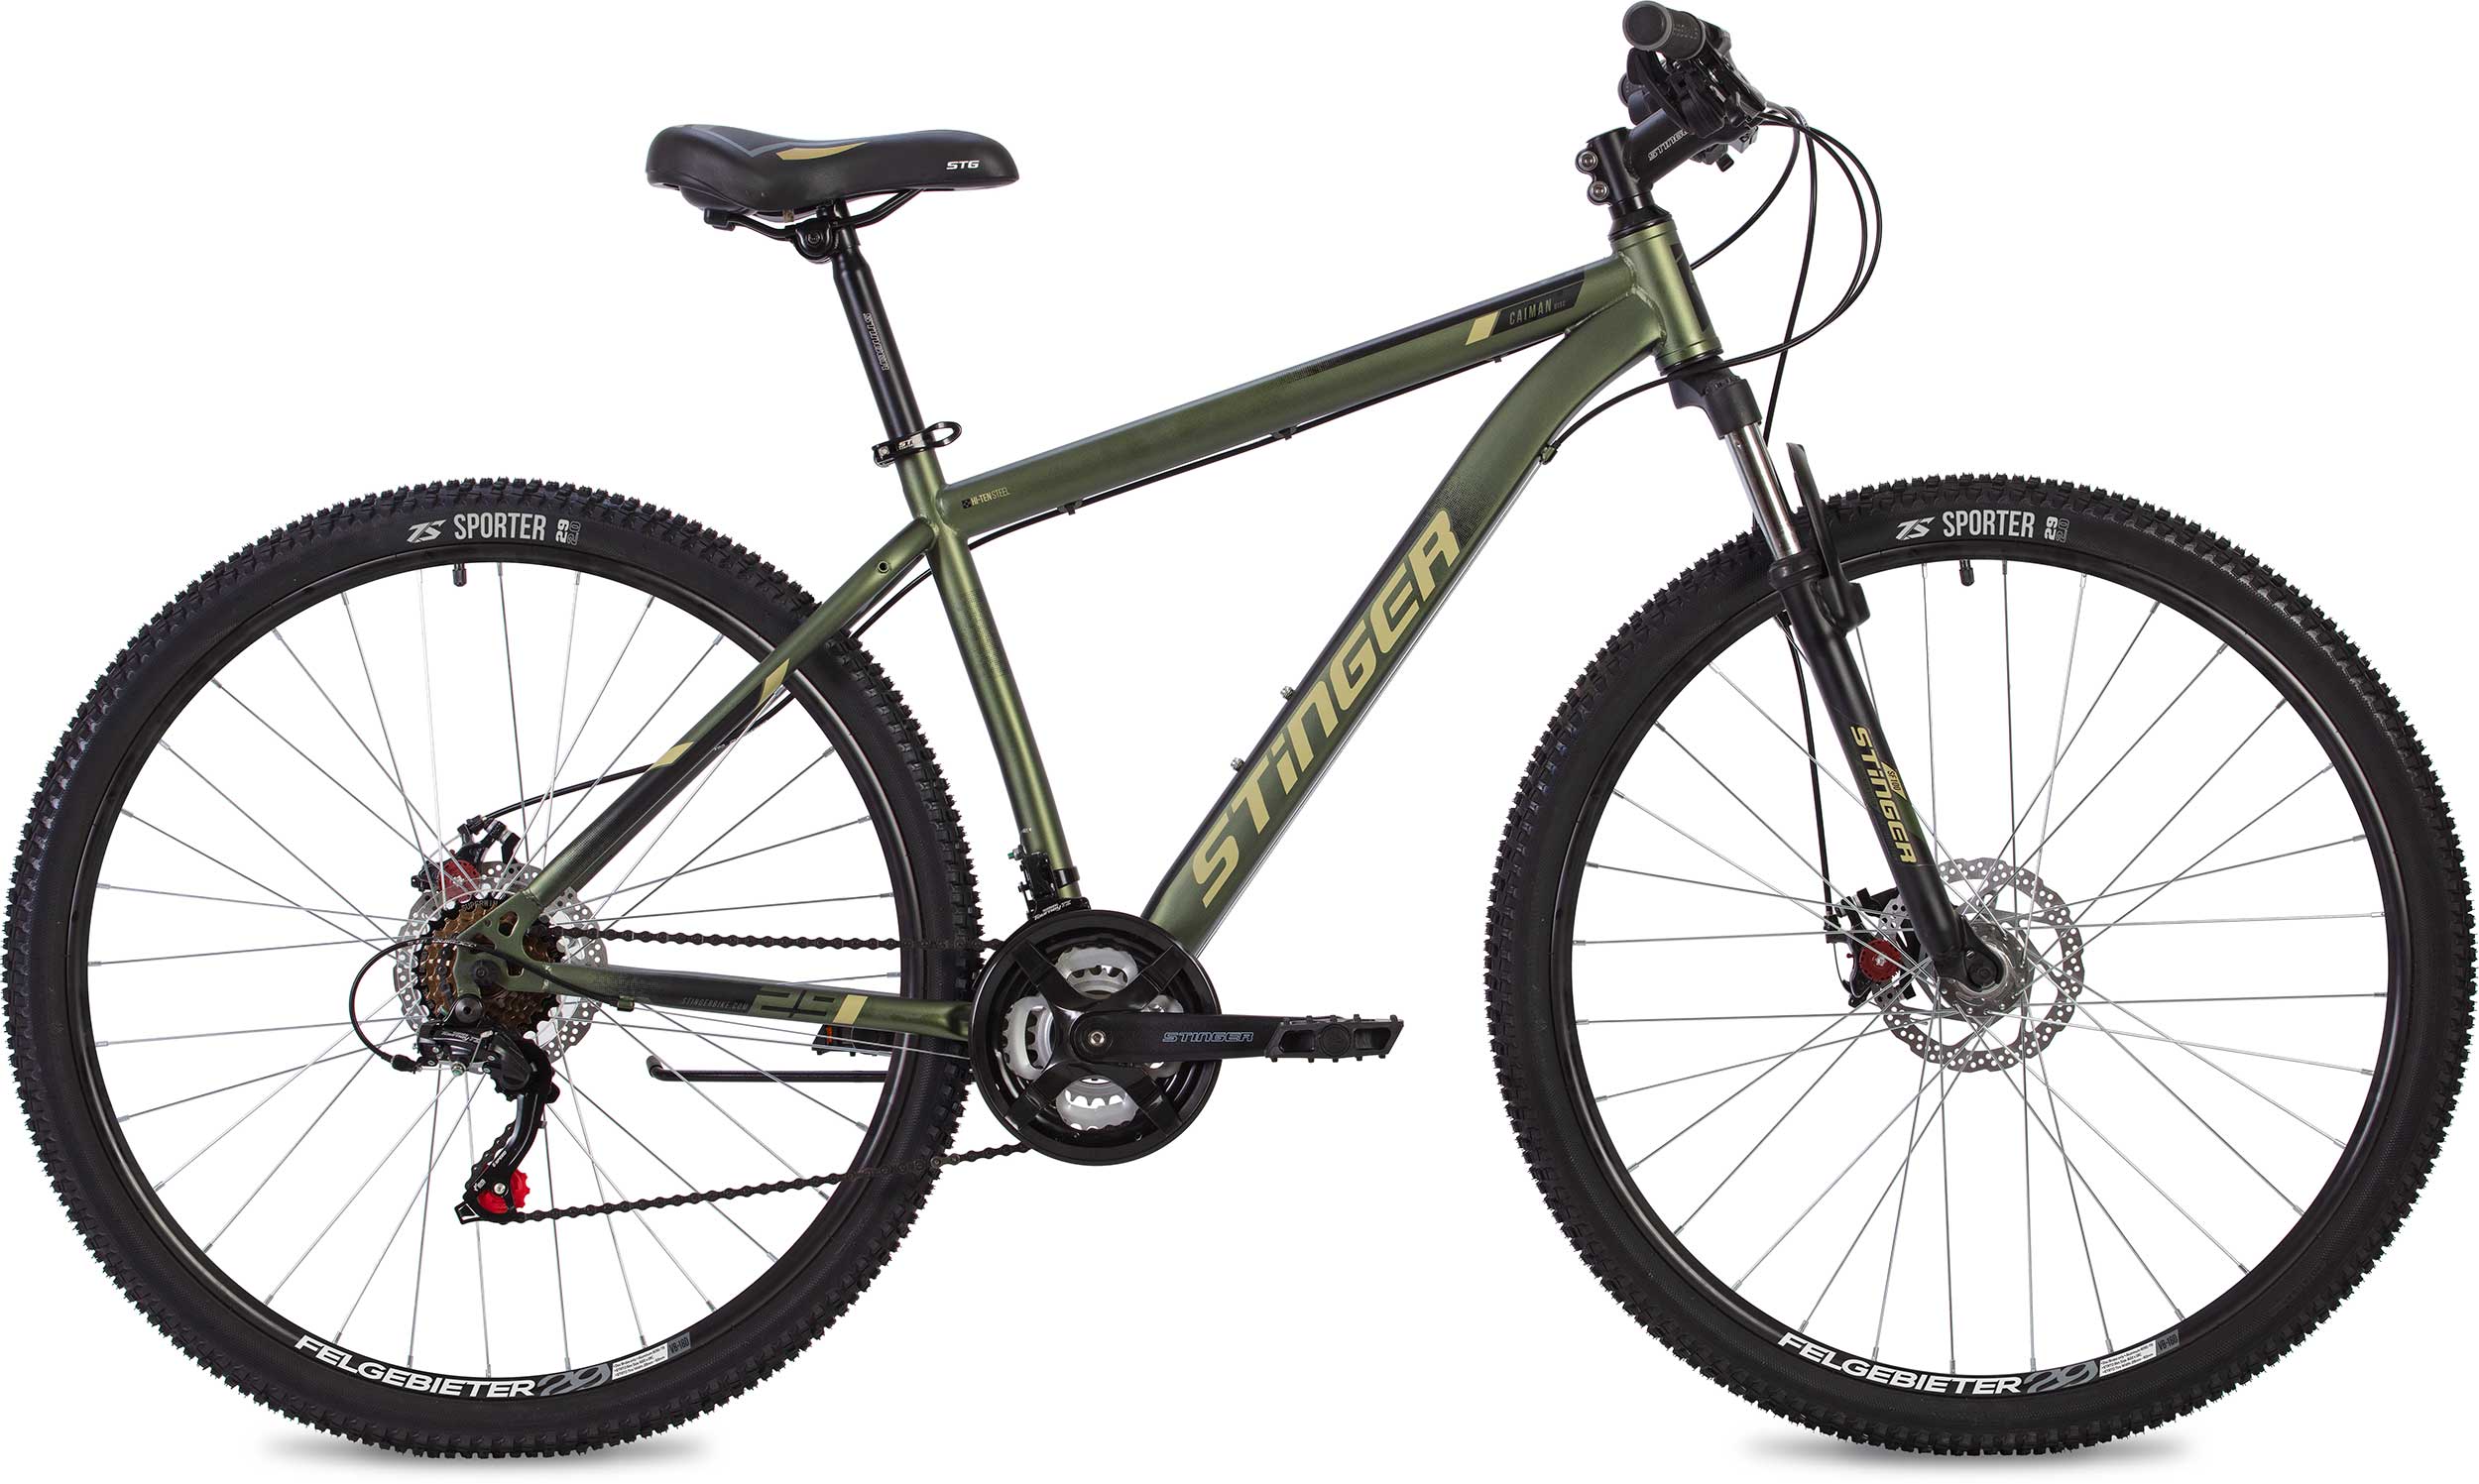  Отзывы о Горном велосипеде Stinger Caiman D 26 2020